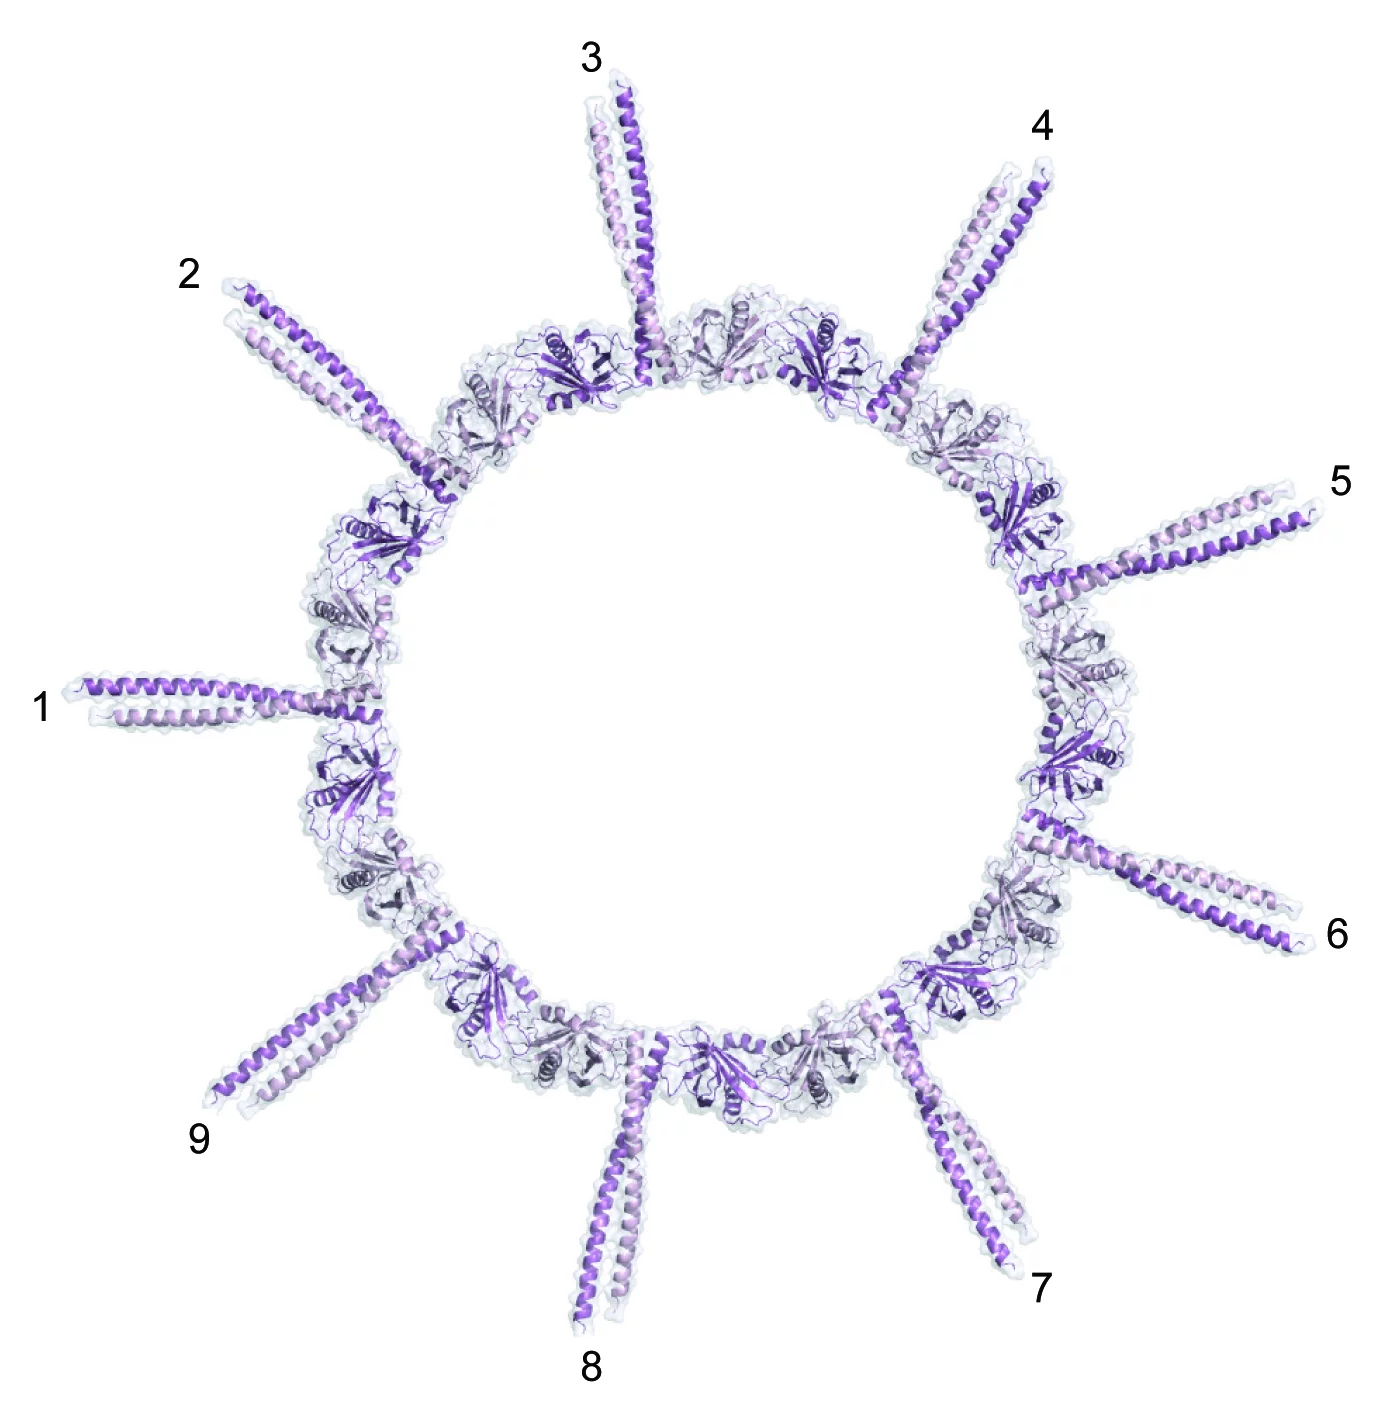 Aufsicht auf das Protein-Strukturmodell des Wagenrads mit der universellen Neuner-Symmetrie. (Abbildung: PSI/M. Steinmetz)